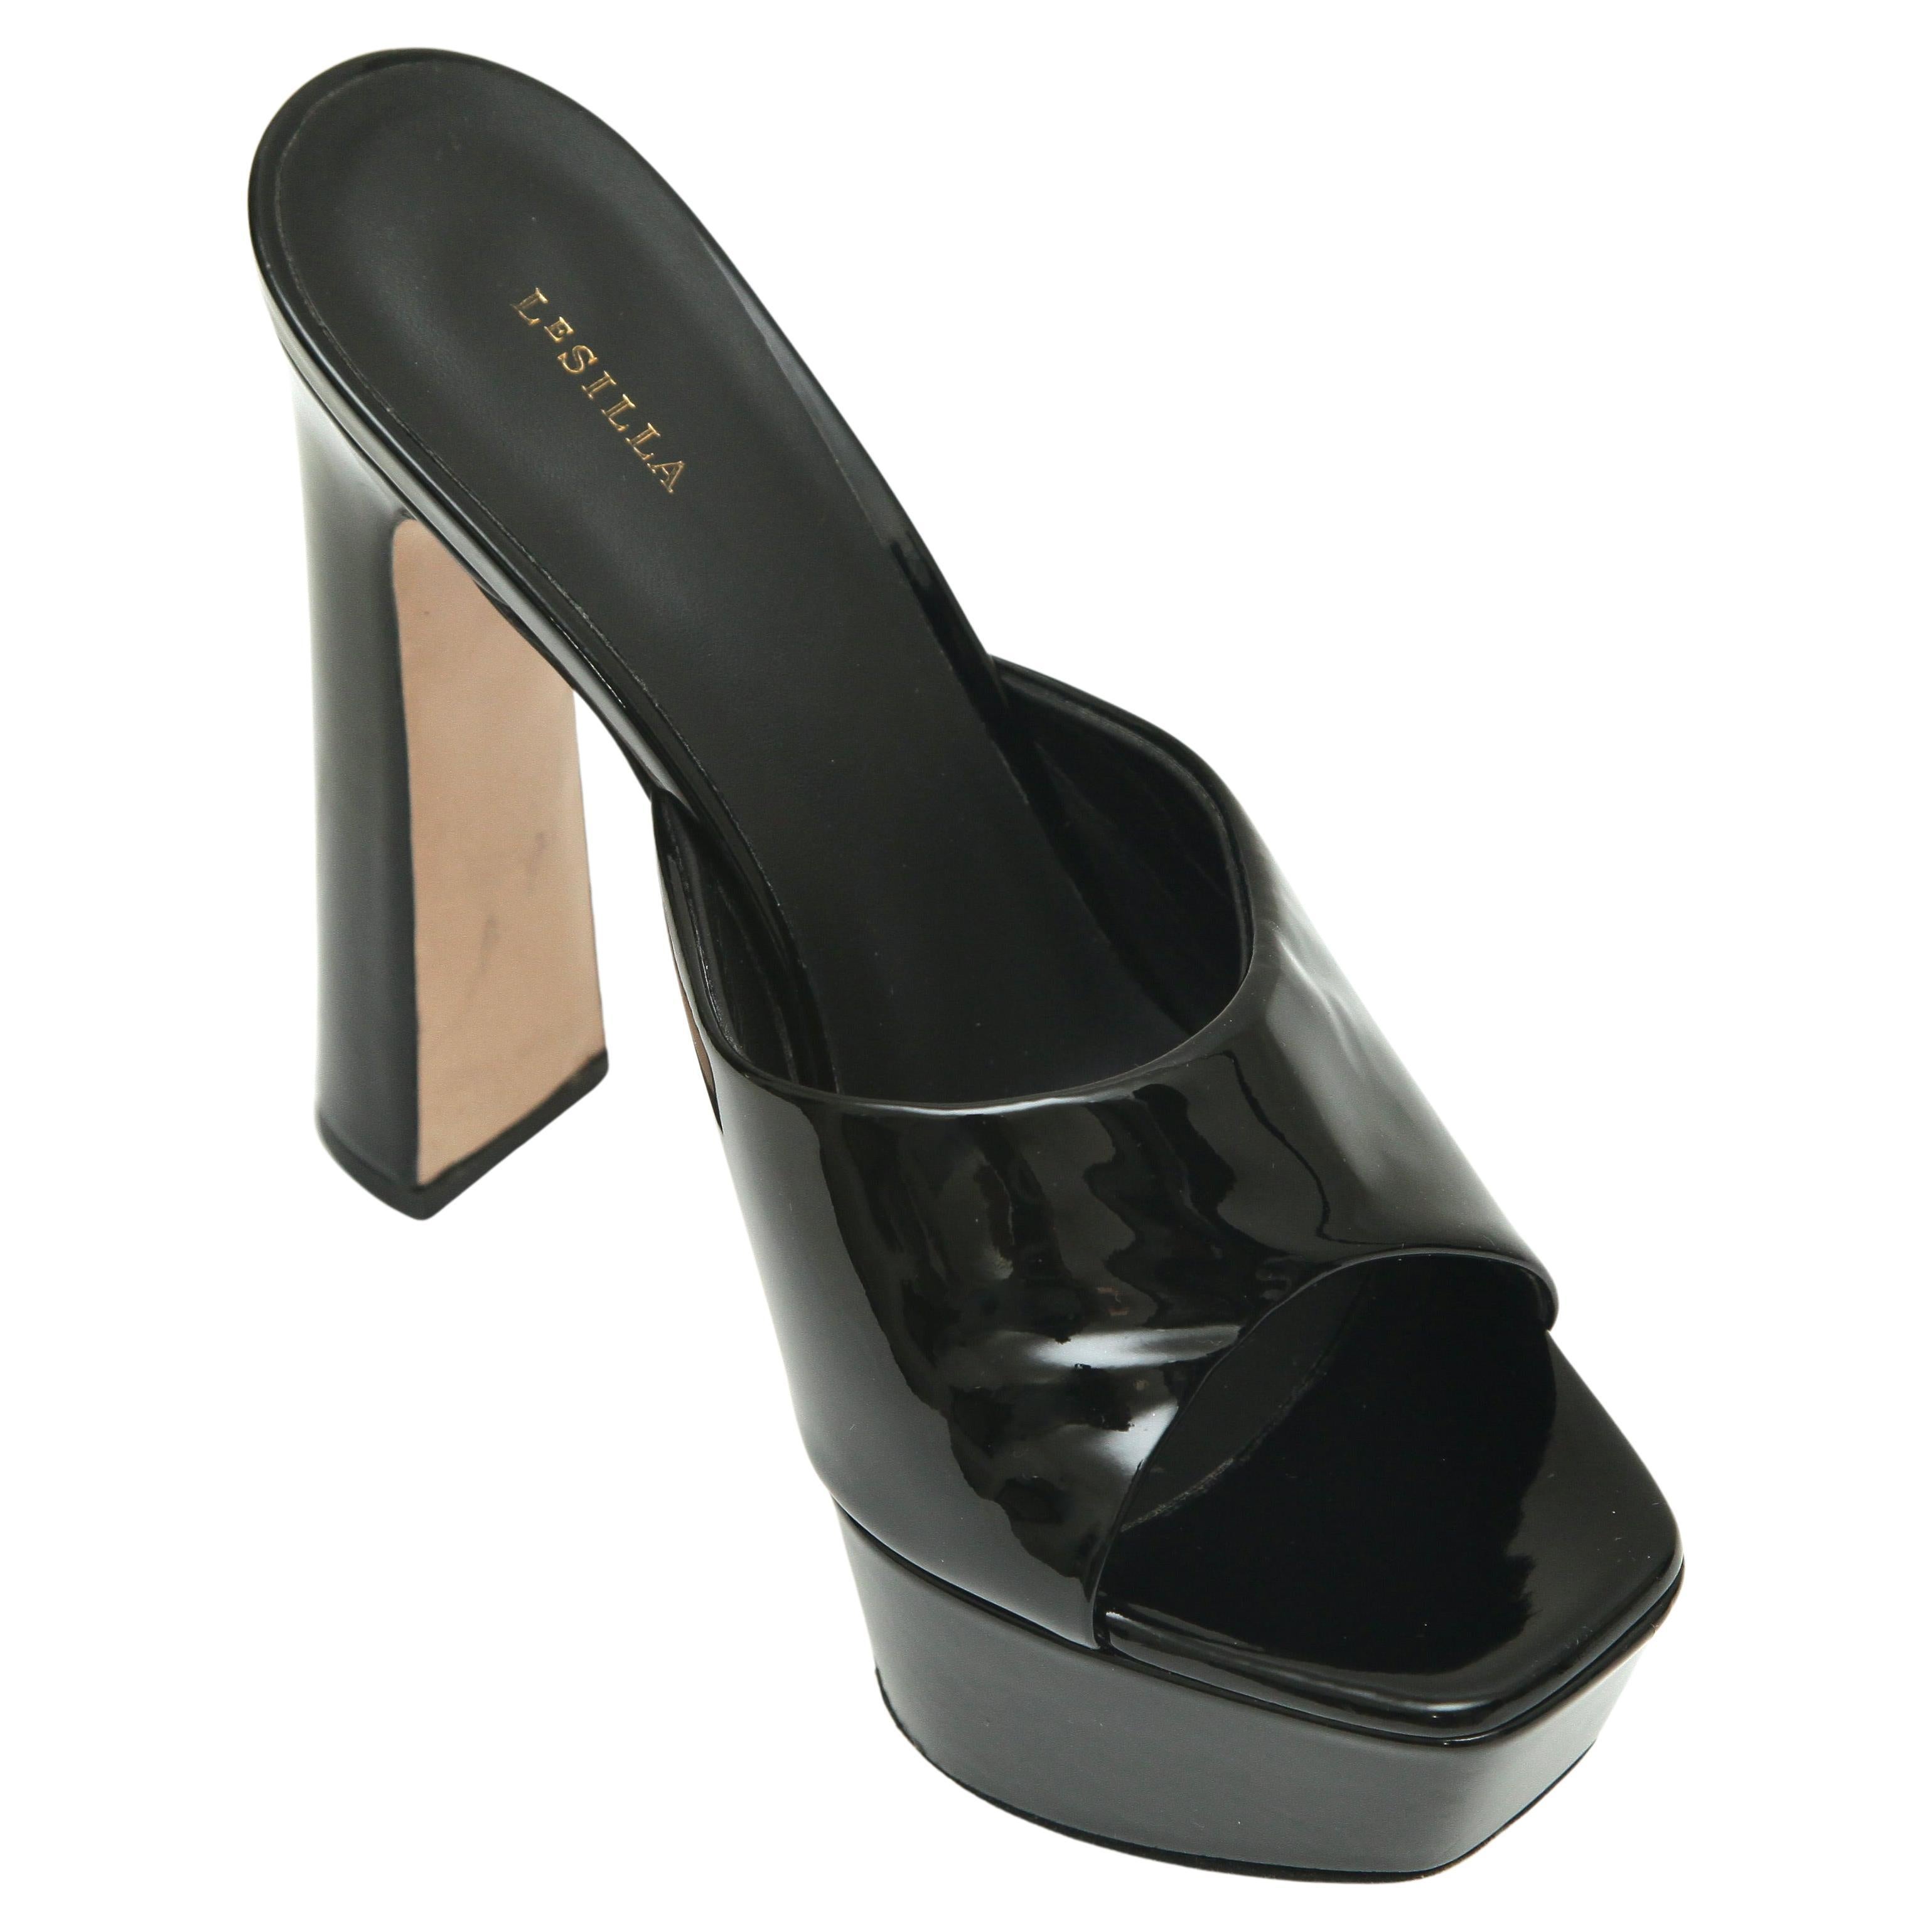 LE SILLA Black Patent Leather RESORT Mule Sandal Platform Heel Slip On 38 $790 For Sale